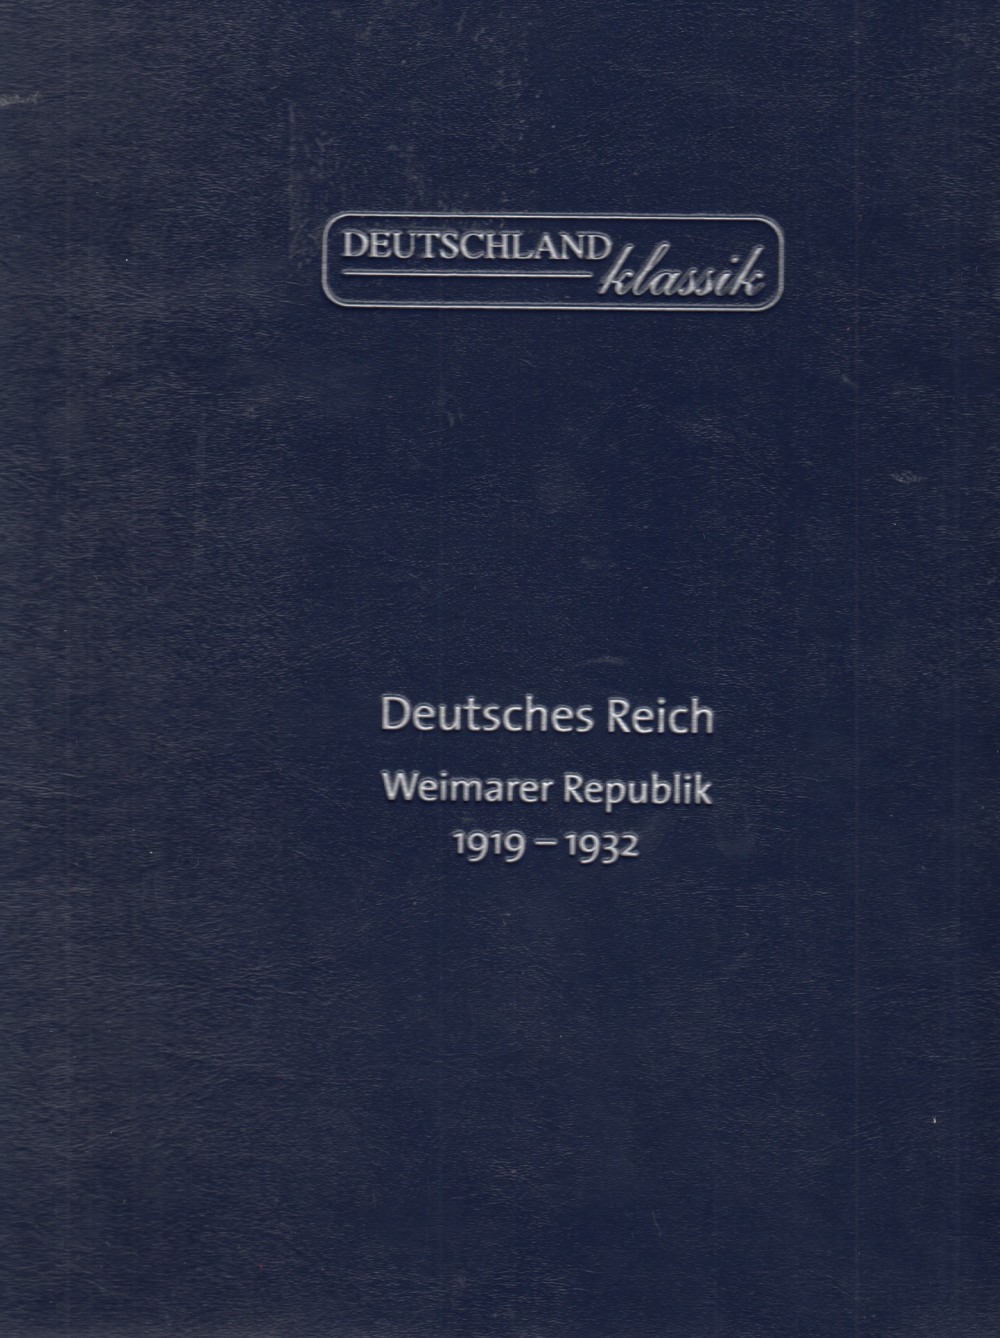 DEUTSCHES REICH WEIMARER REPUBLIK 1919-1932 ALBUM - Image 2 of 5